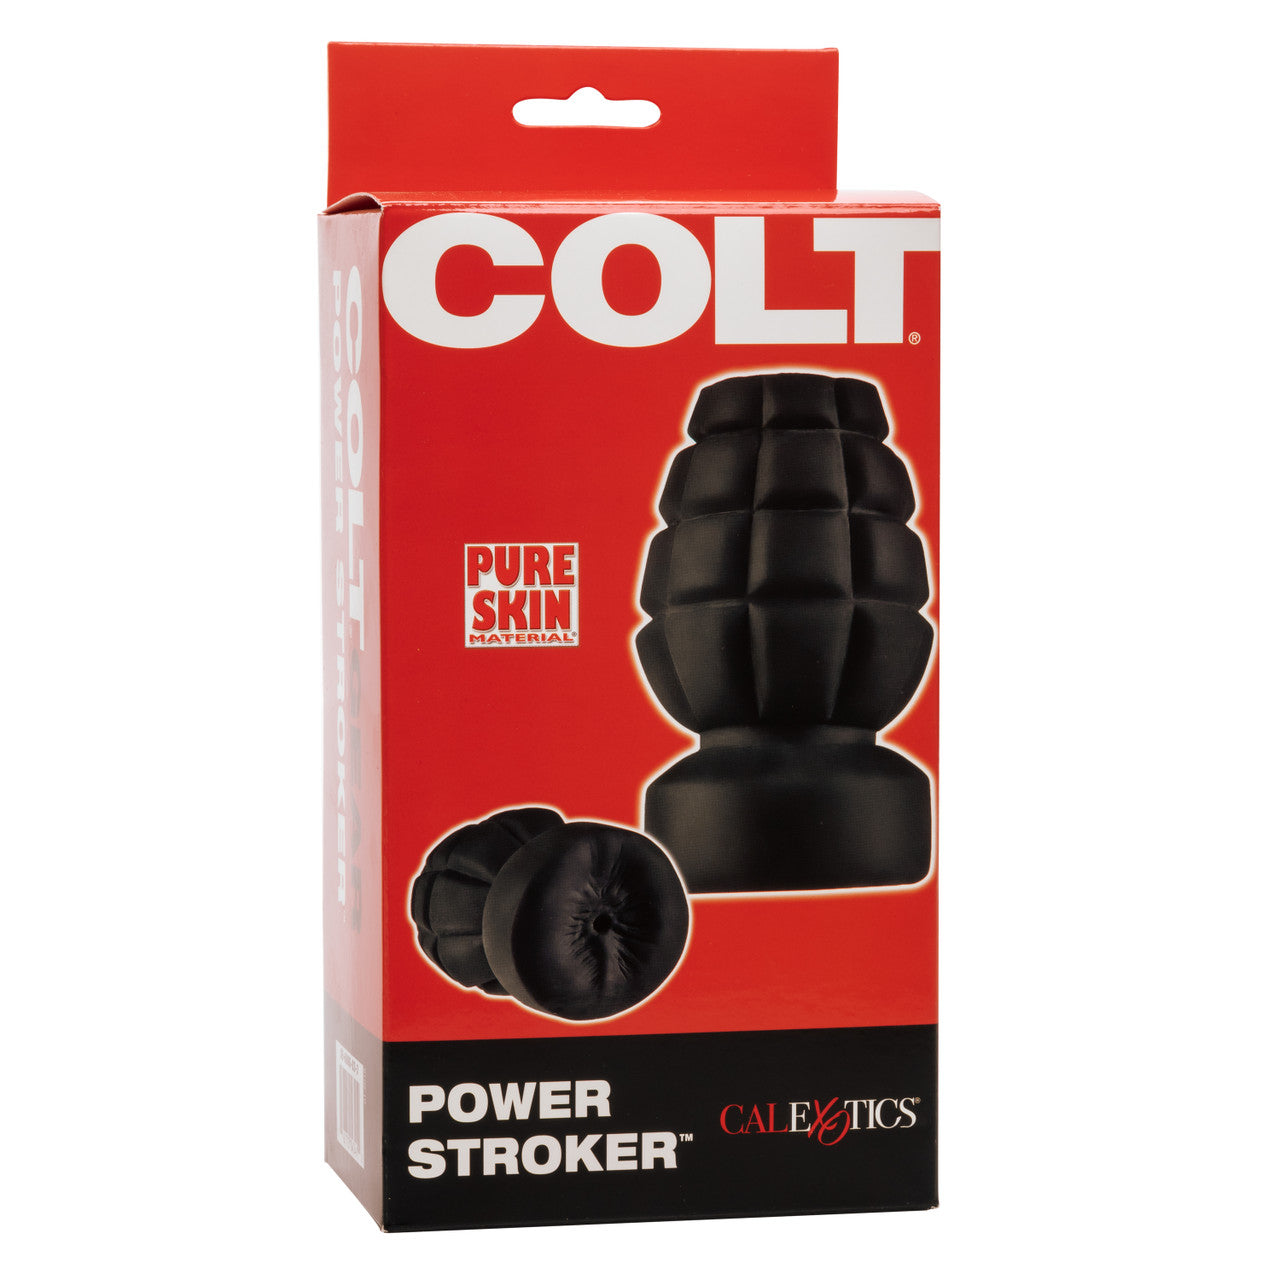 Colt: Power Stroker